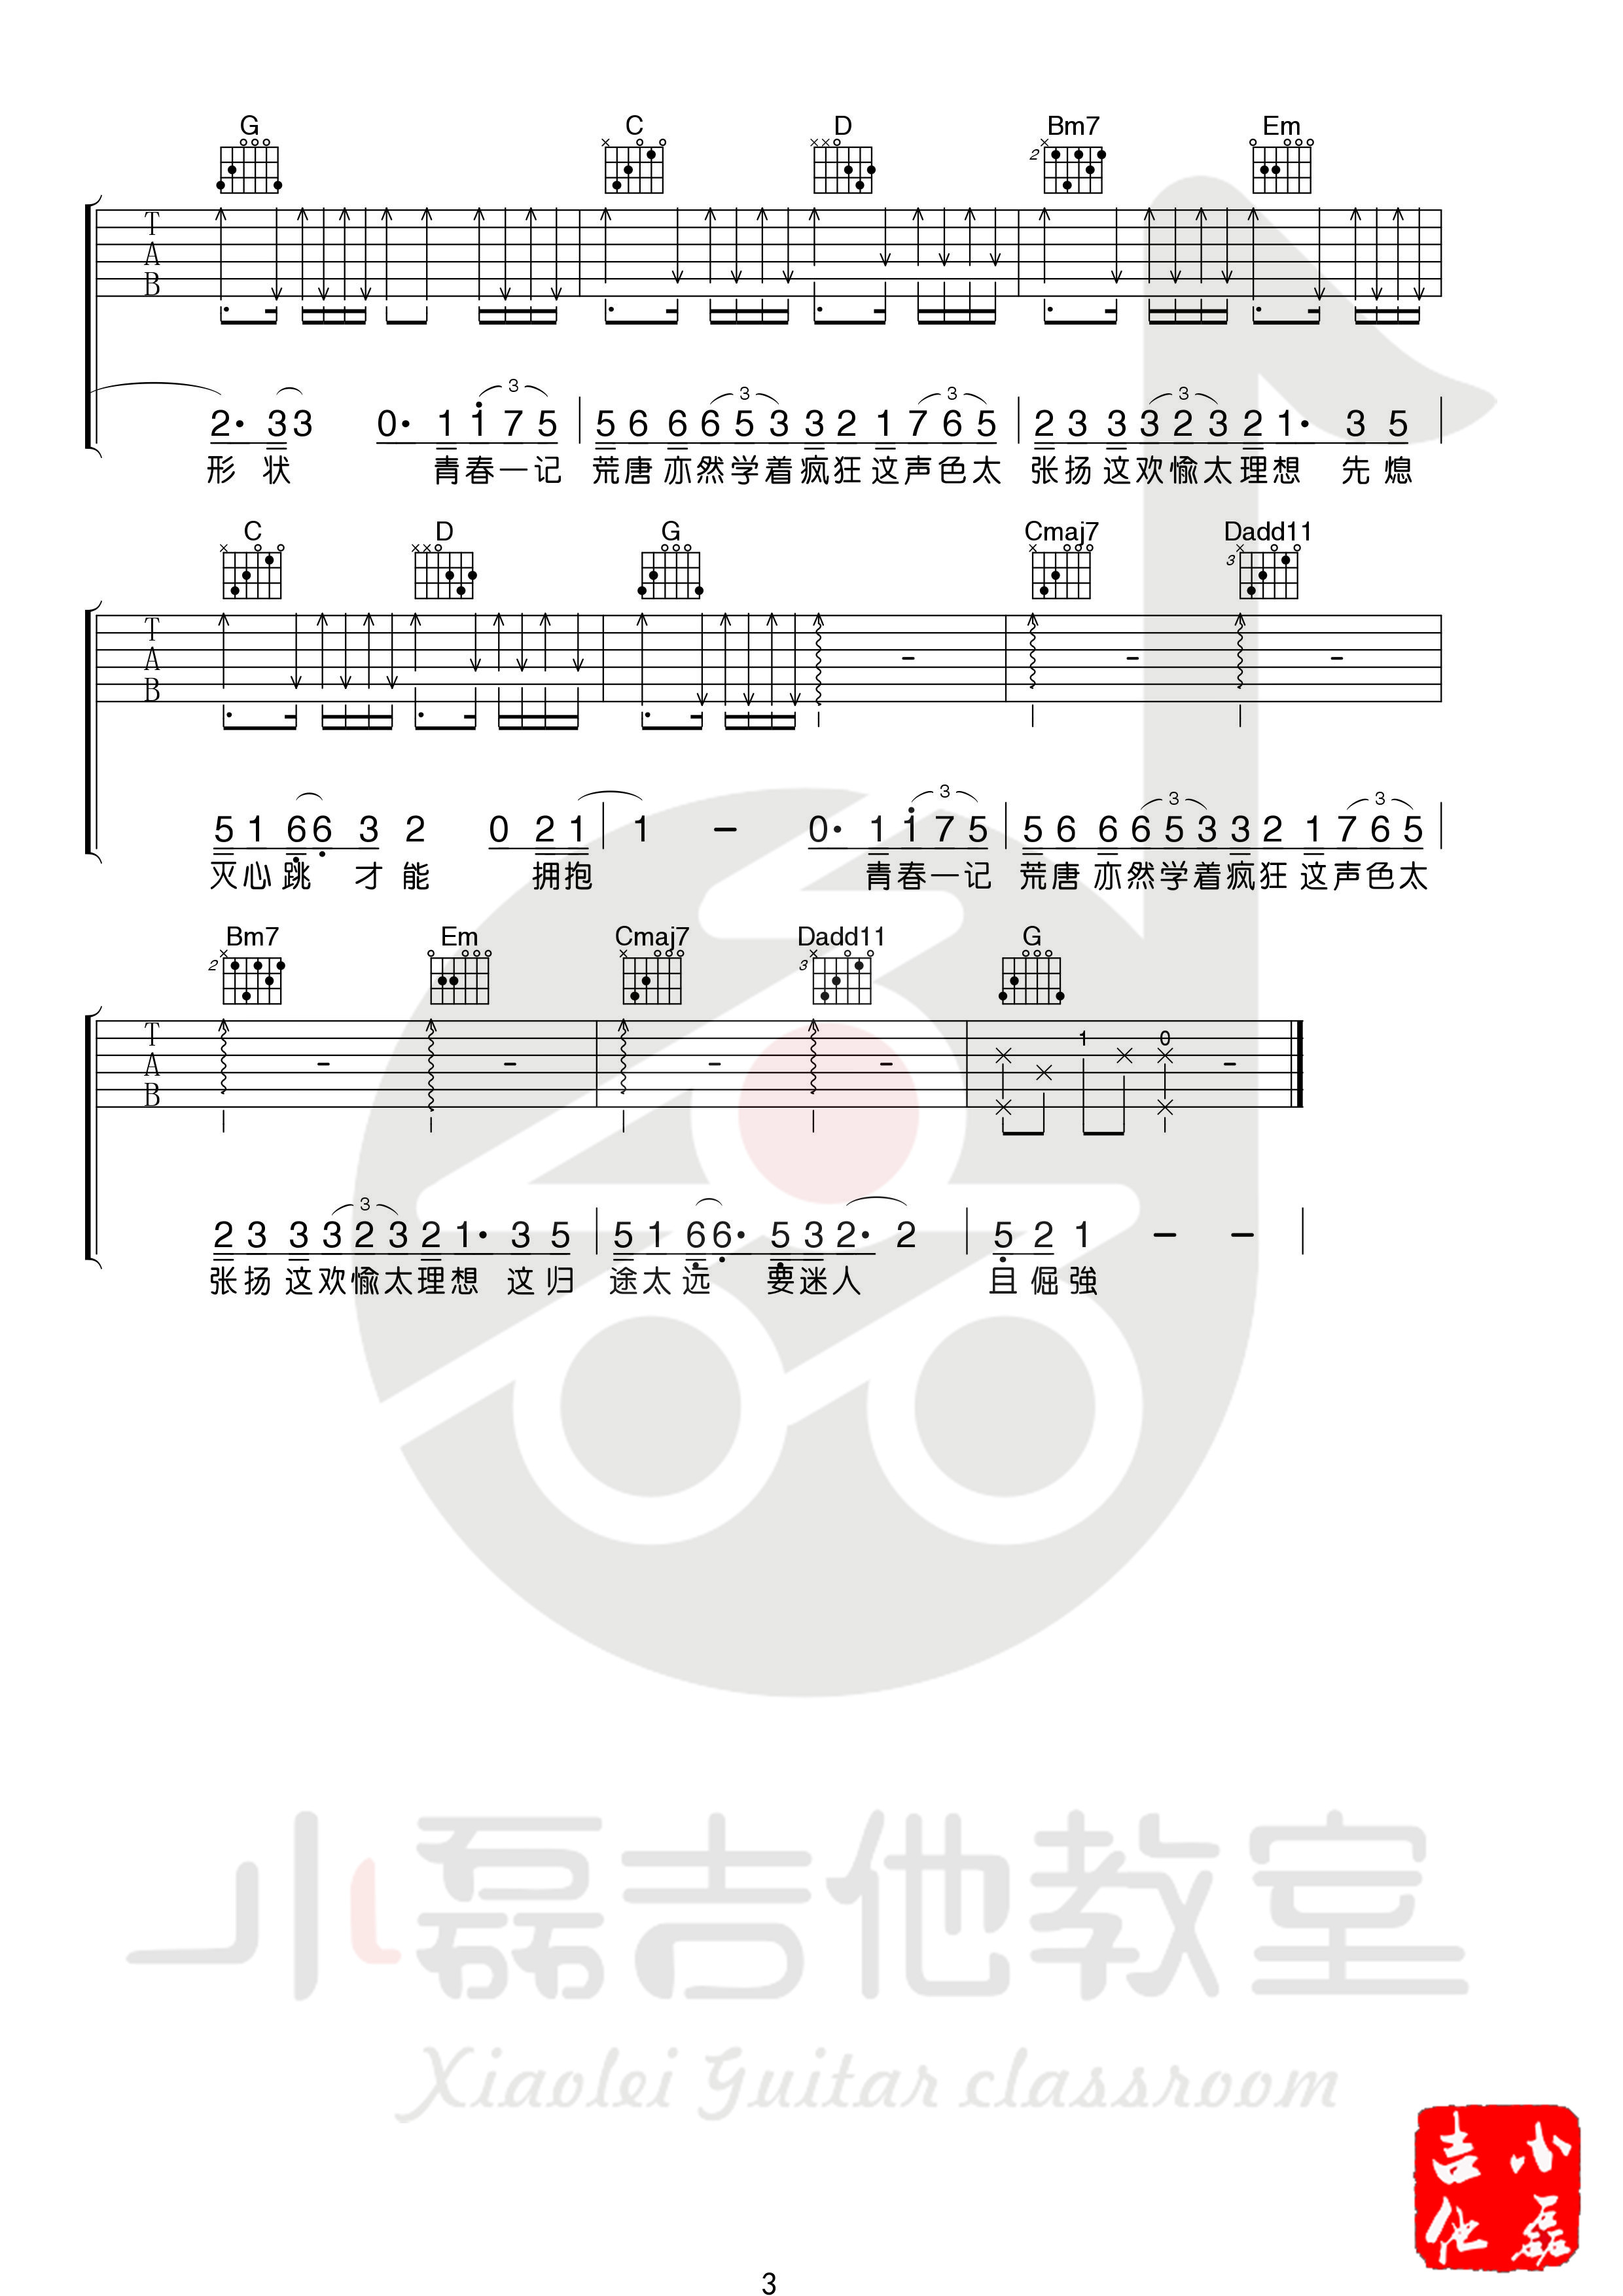 白羊吉他谱(图片谱,弹唱,伴奏,教学)_徐秉龙(Barry)_0003.jpg